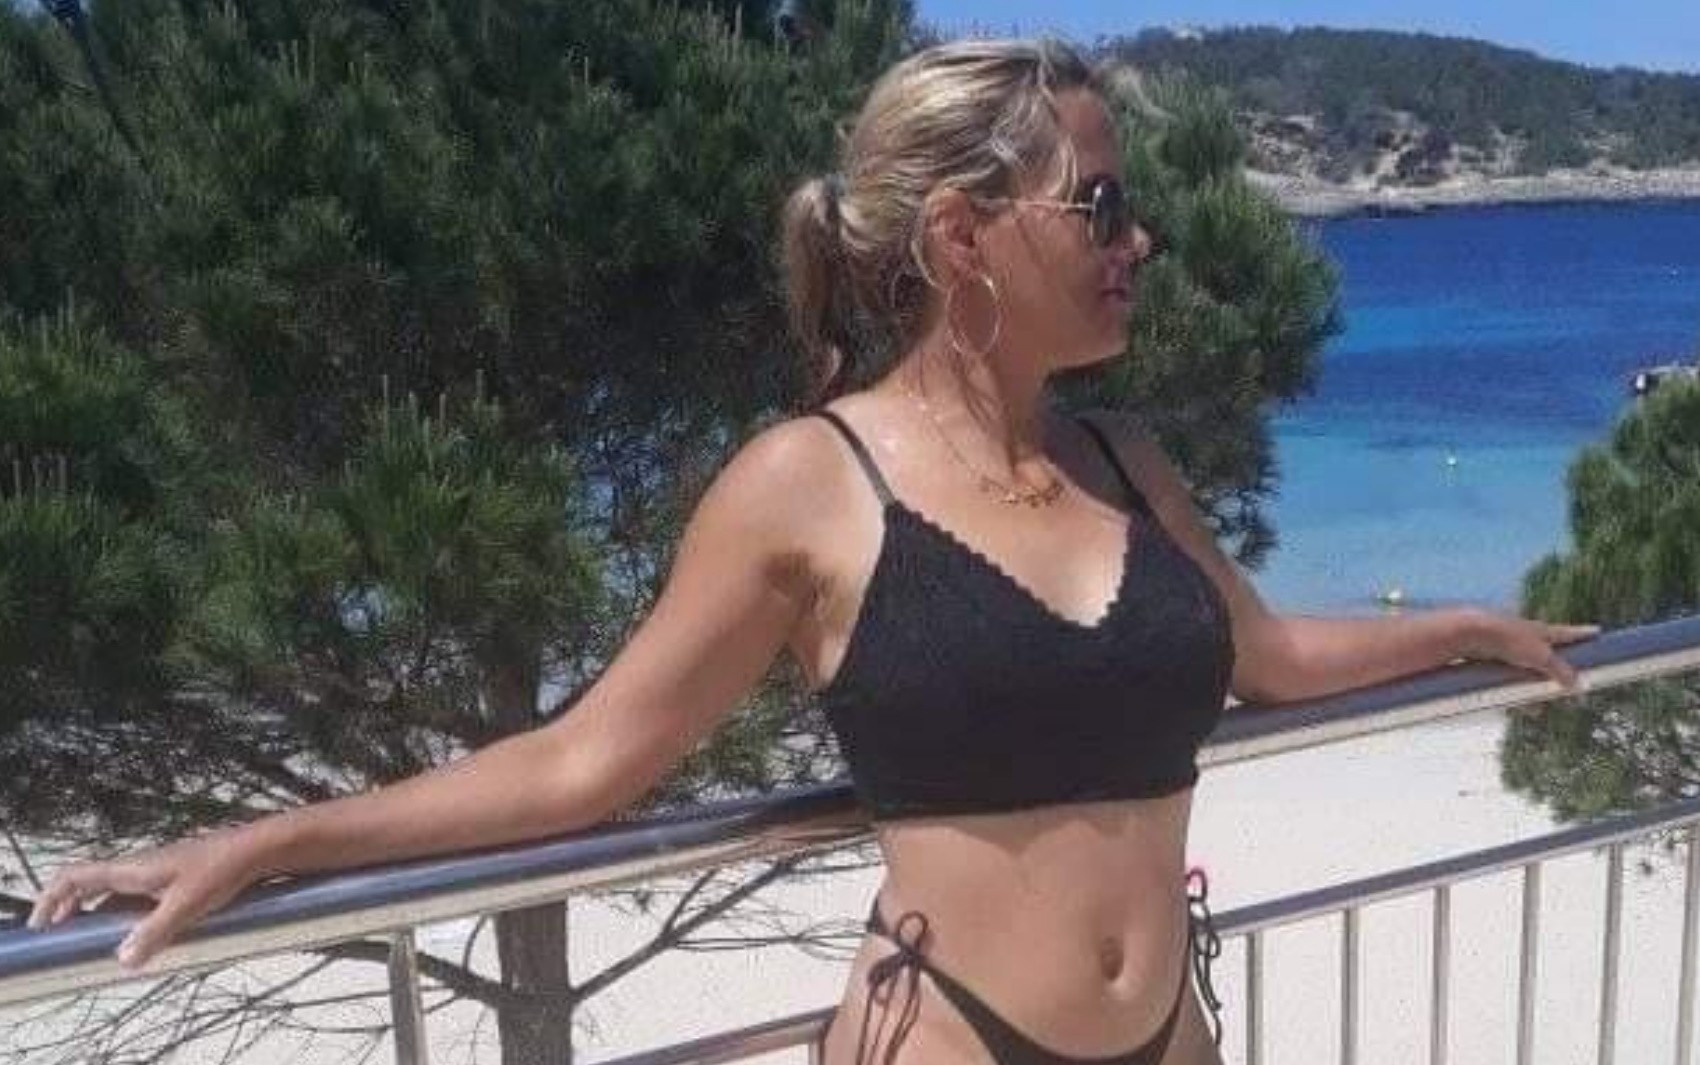 Filha relata que mãe foi vítima de violência doméstica em Ibiza e precisou voltar a Goiânia após ser atropelada por ex